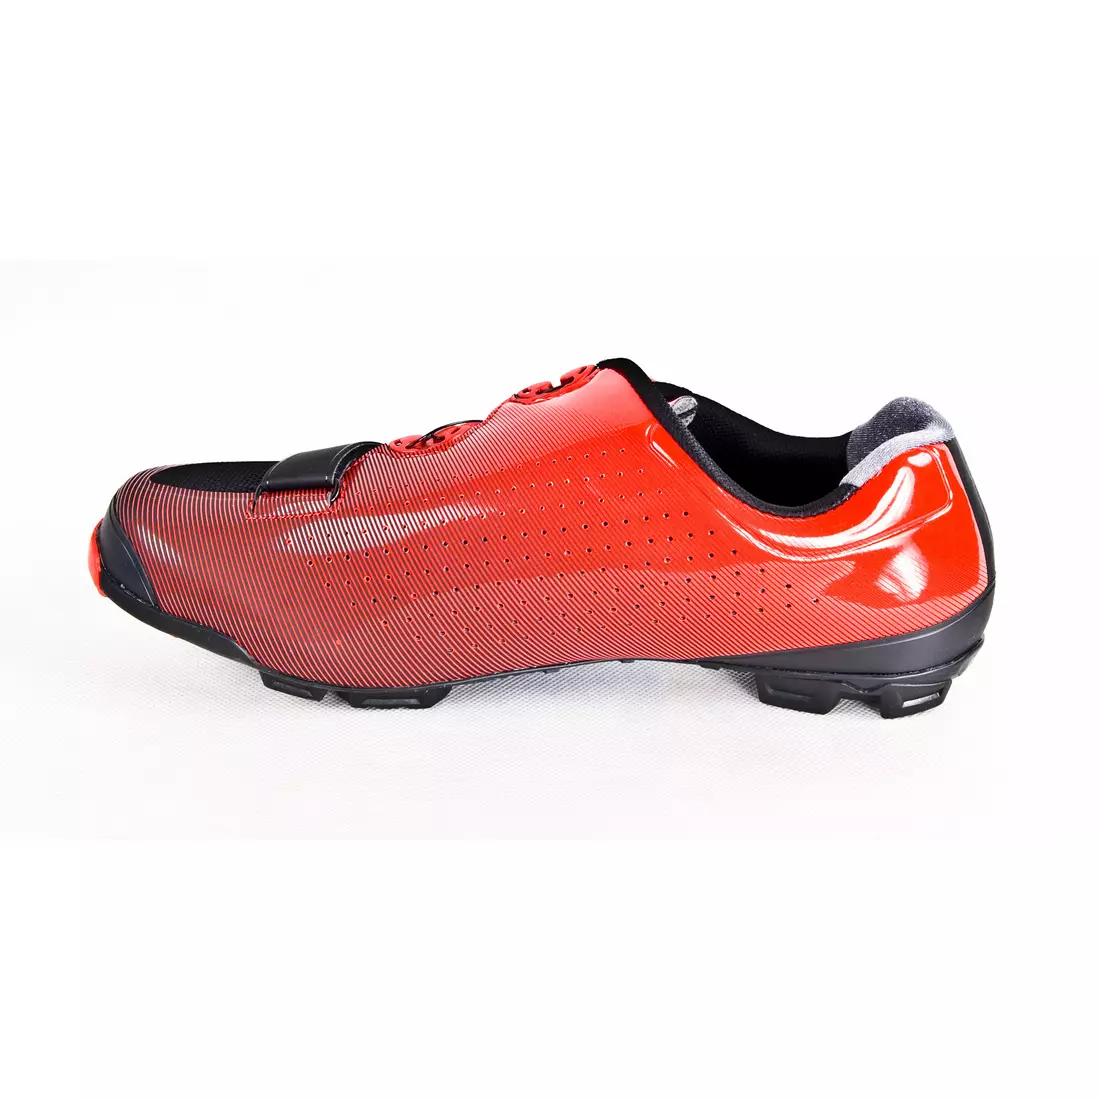 SHIMANO SH-XC700 cycling shoes, red